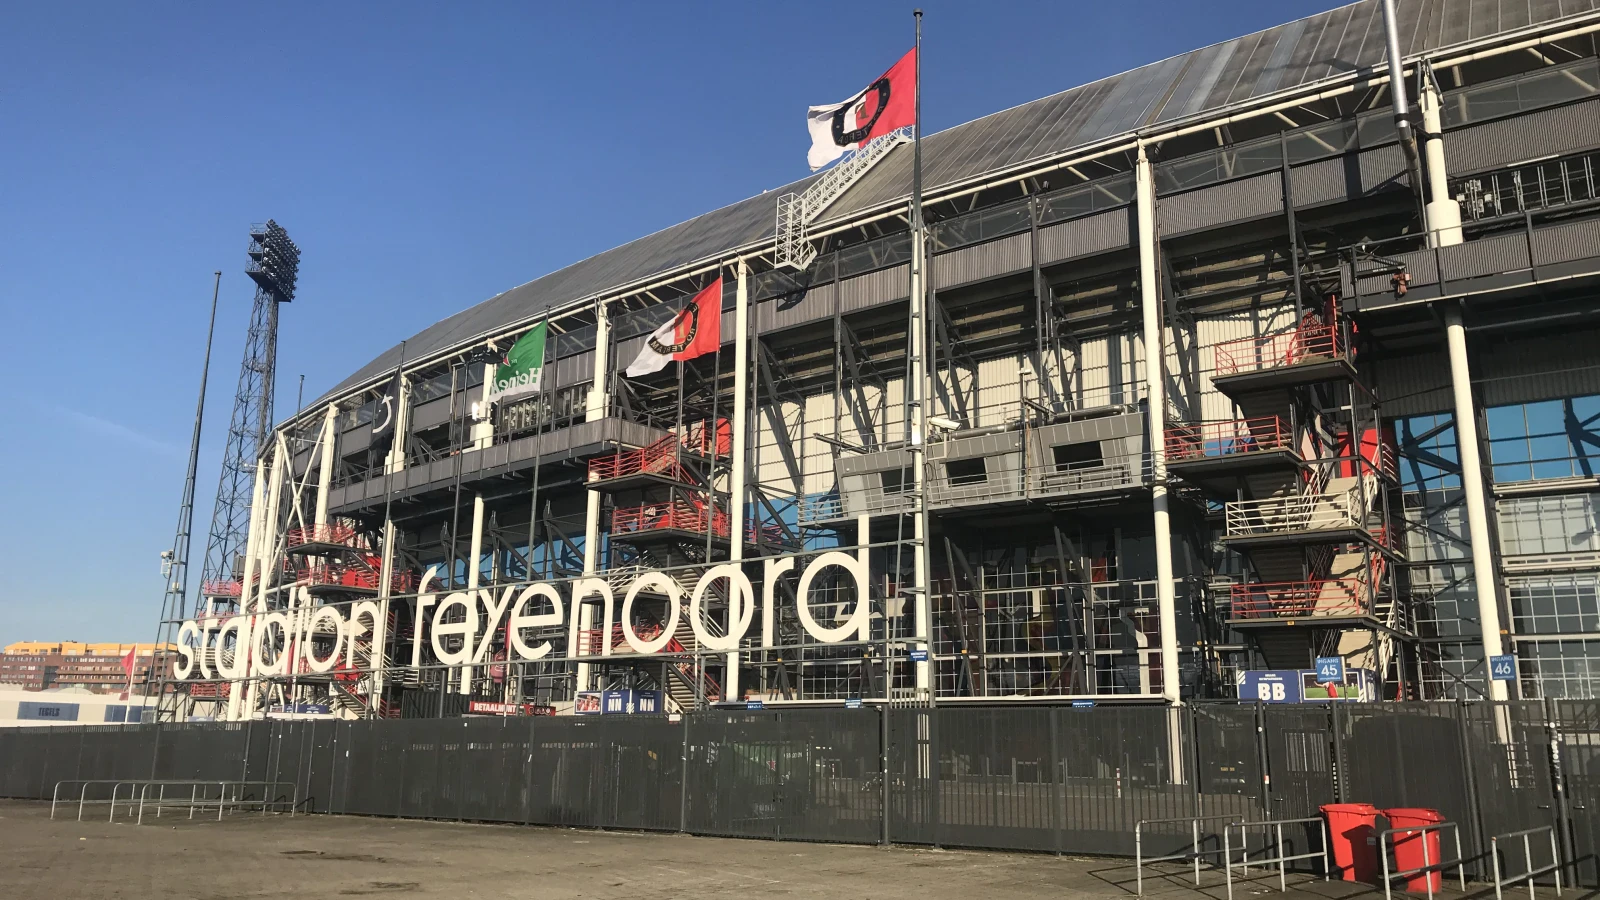 'Feyenoord moet baas in eigen huis worden, anders komen ze niet verder'